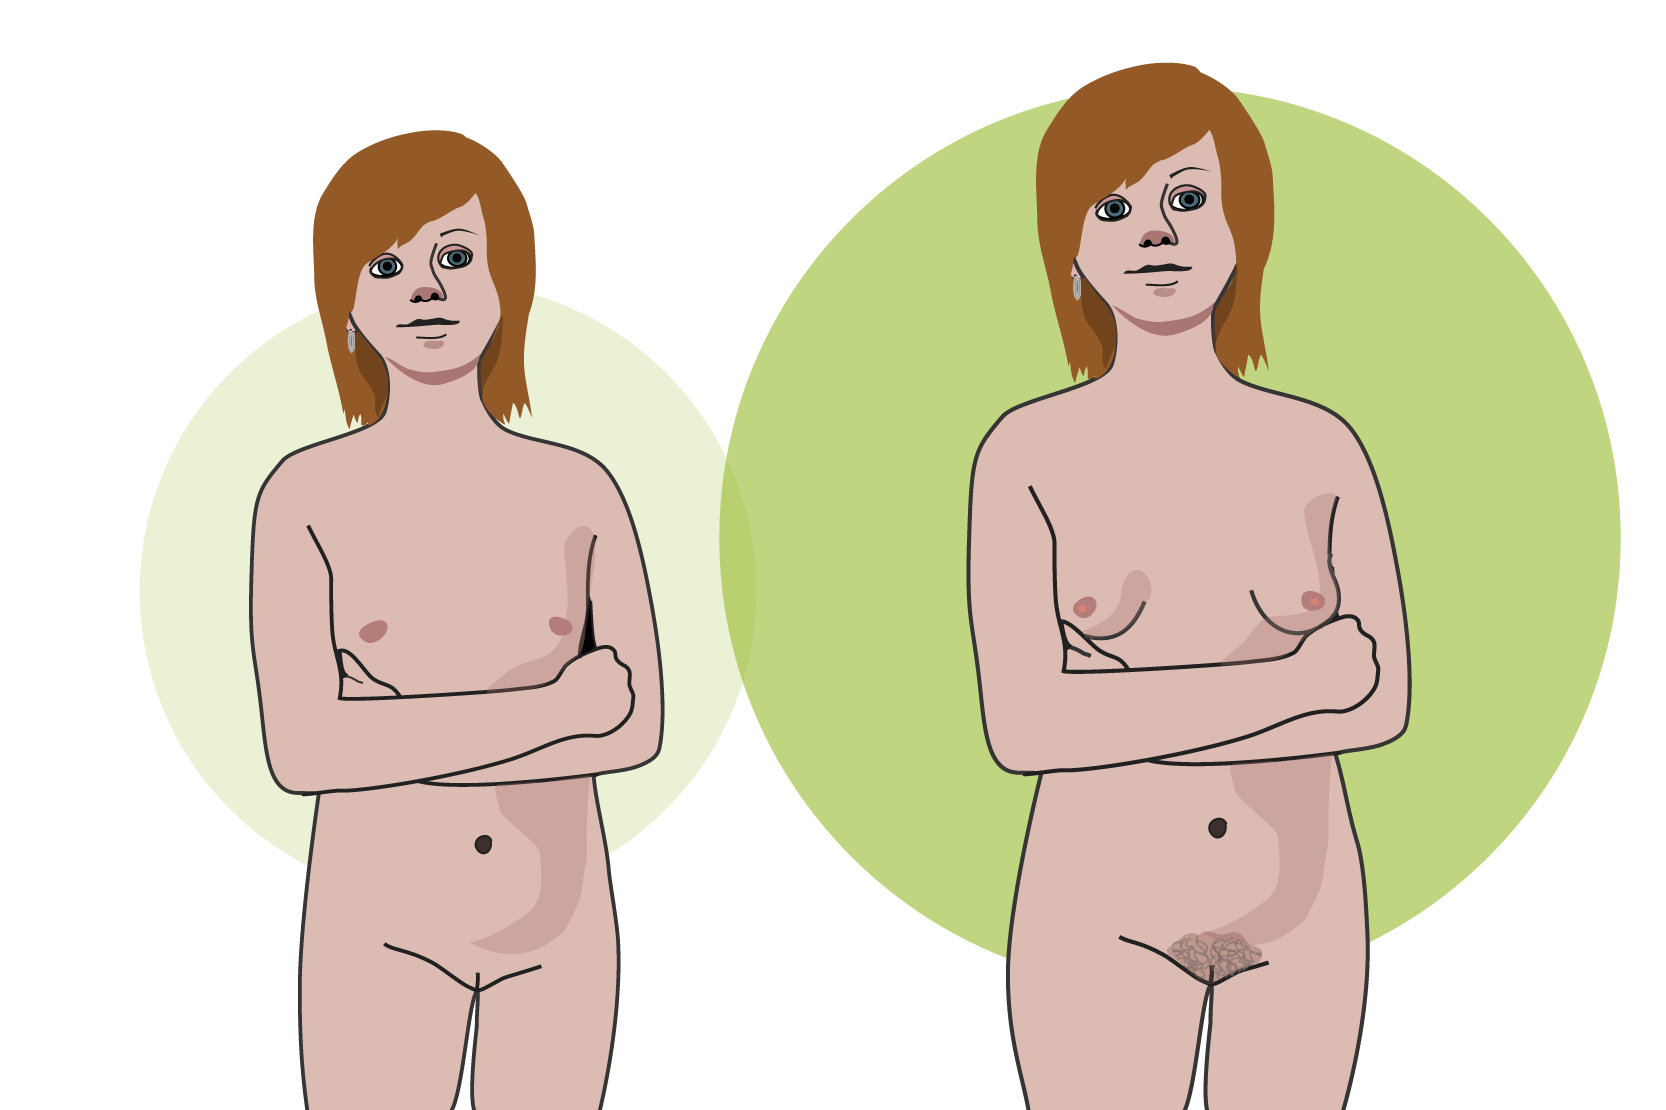 En bild av en naken person som inte har kommit i puberteten ännu. Hen har inget könshår och brösten har inte börjat växa. En annan bild på samma person efter att hen har kommit i puberteten. Nu har hen rundare höfter, större bröst och könshår. Illustration.